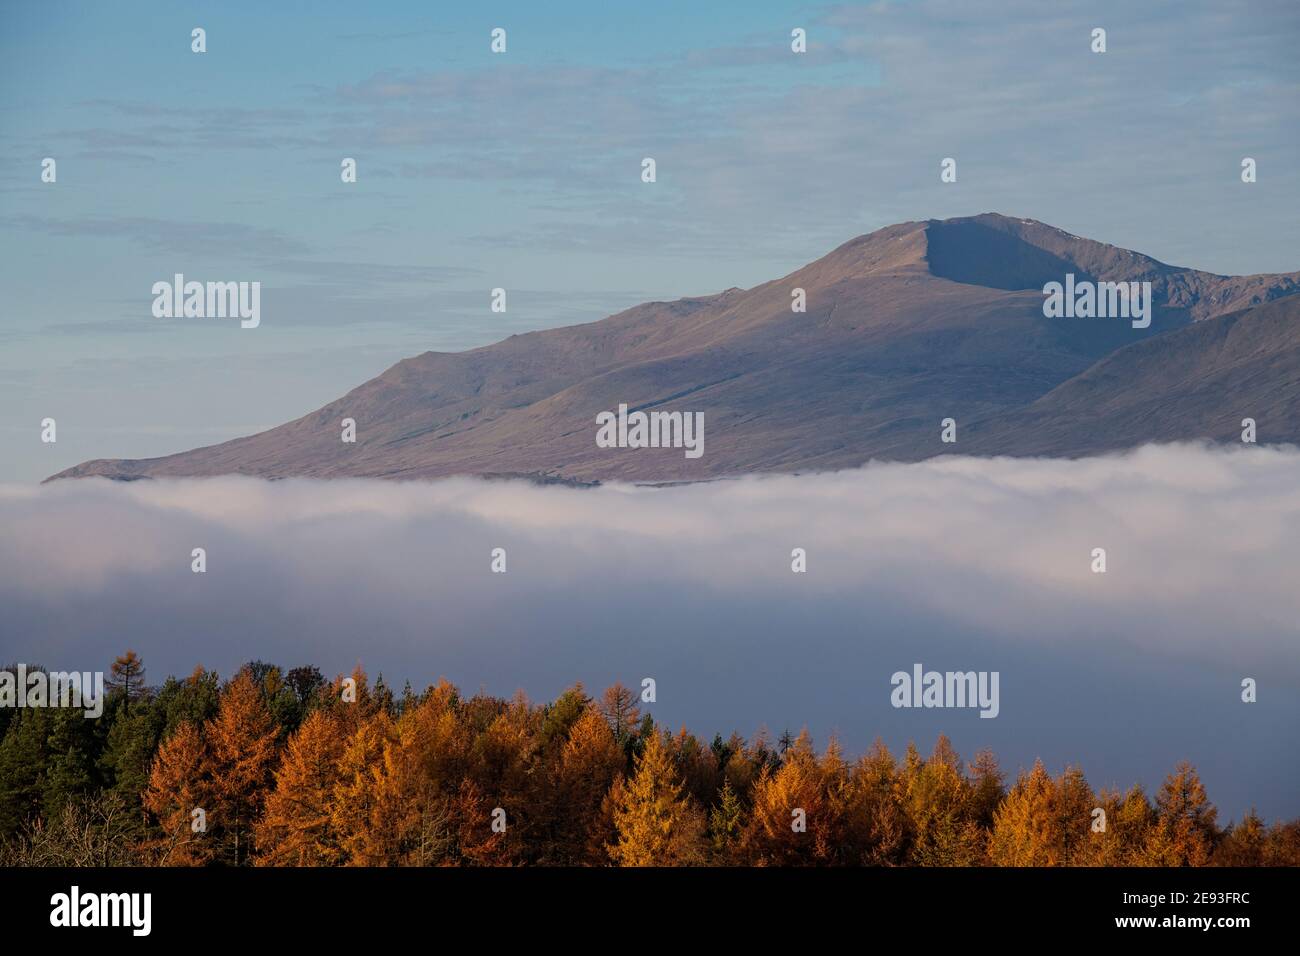 Ben Lawers Mountain, Scotland Stock Photo